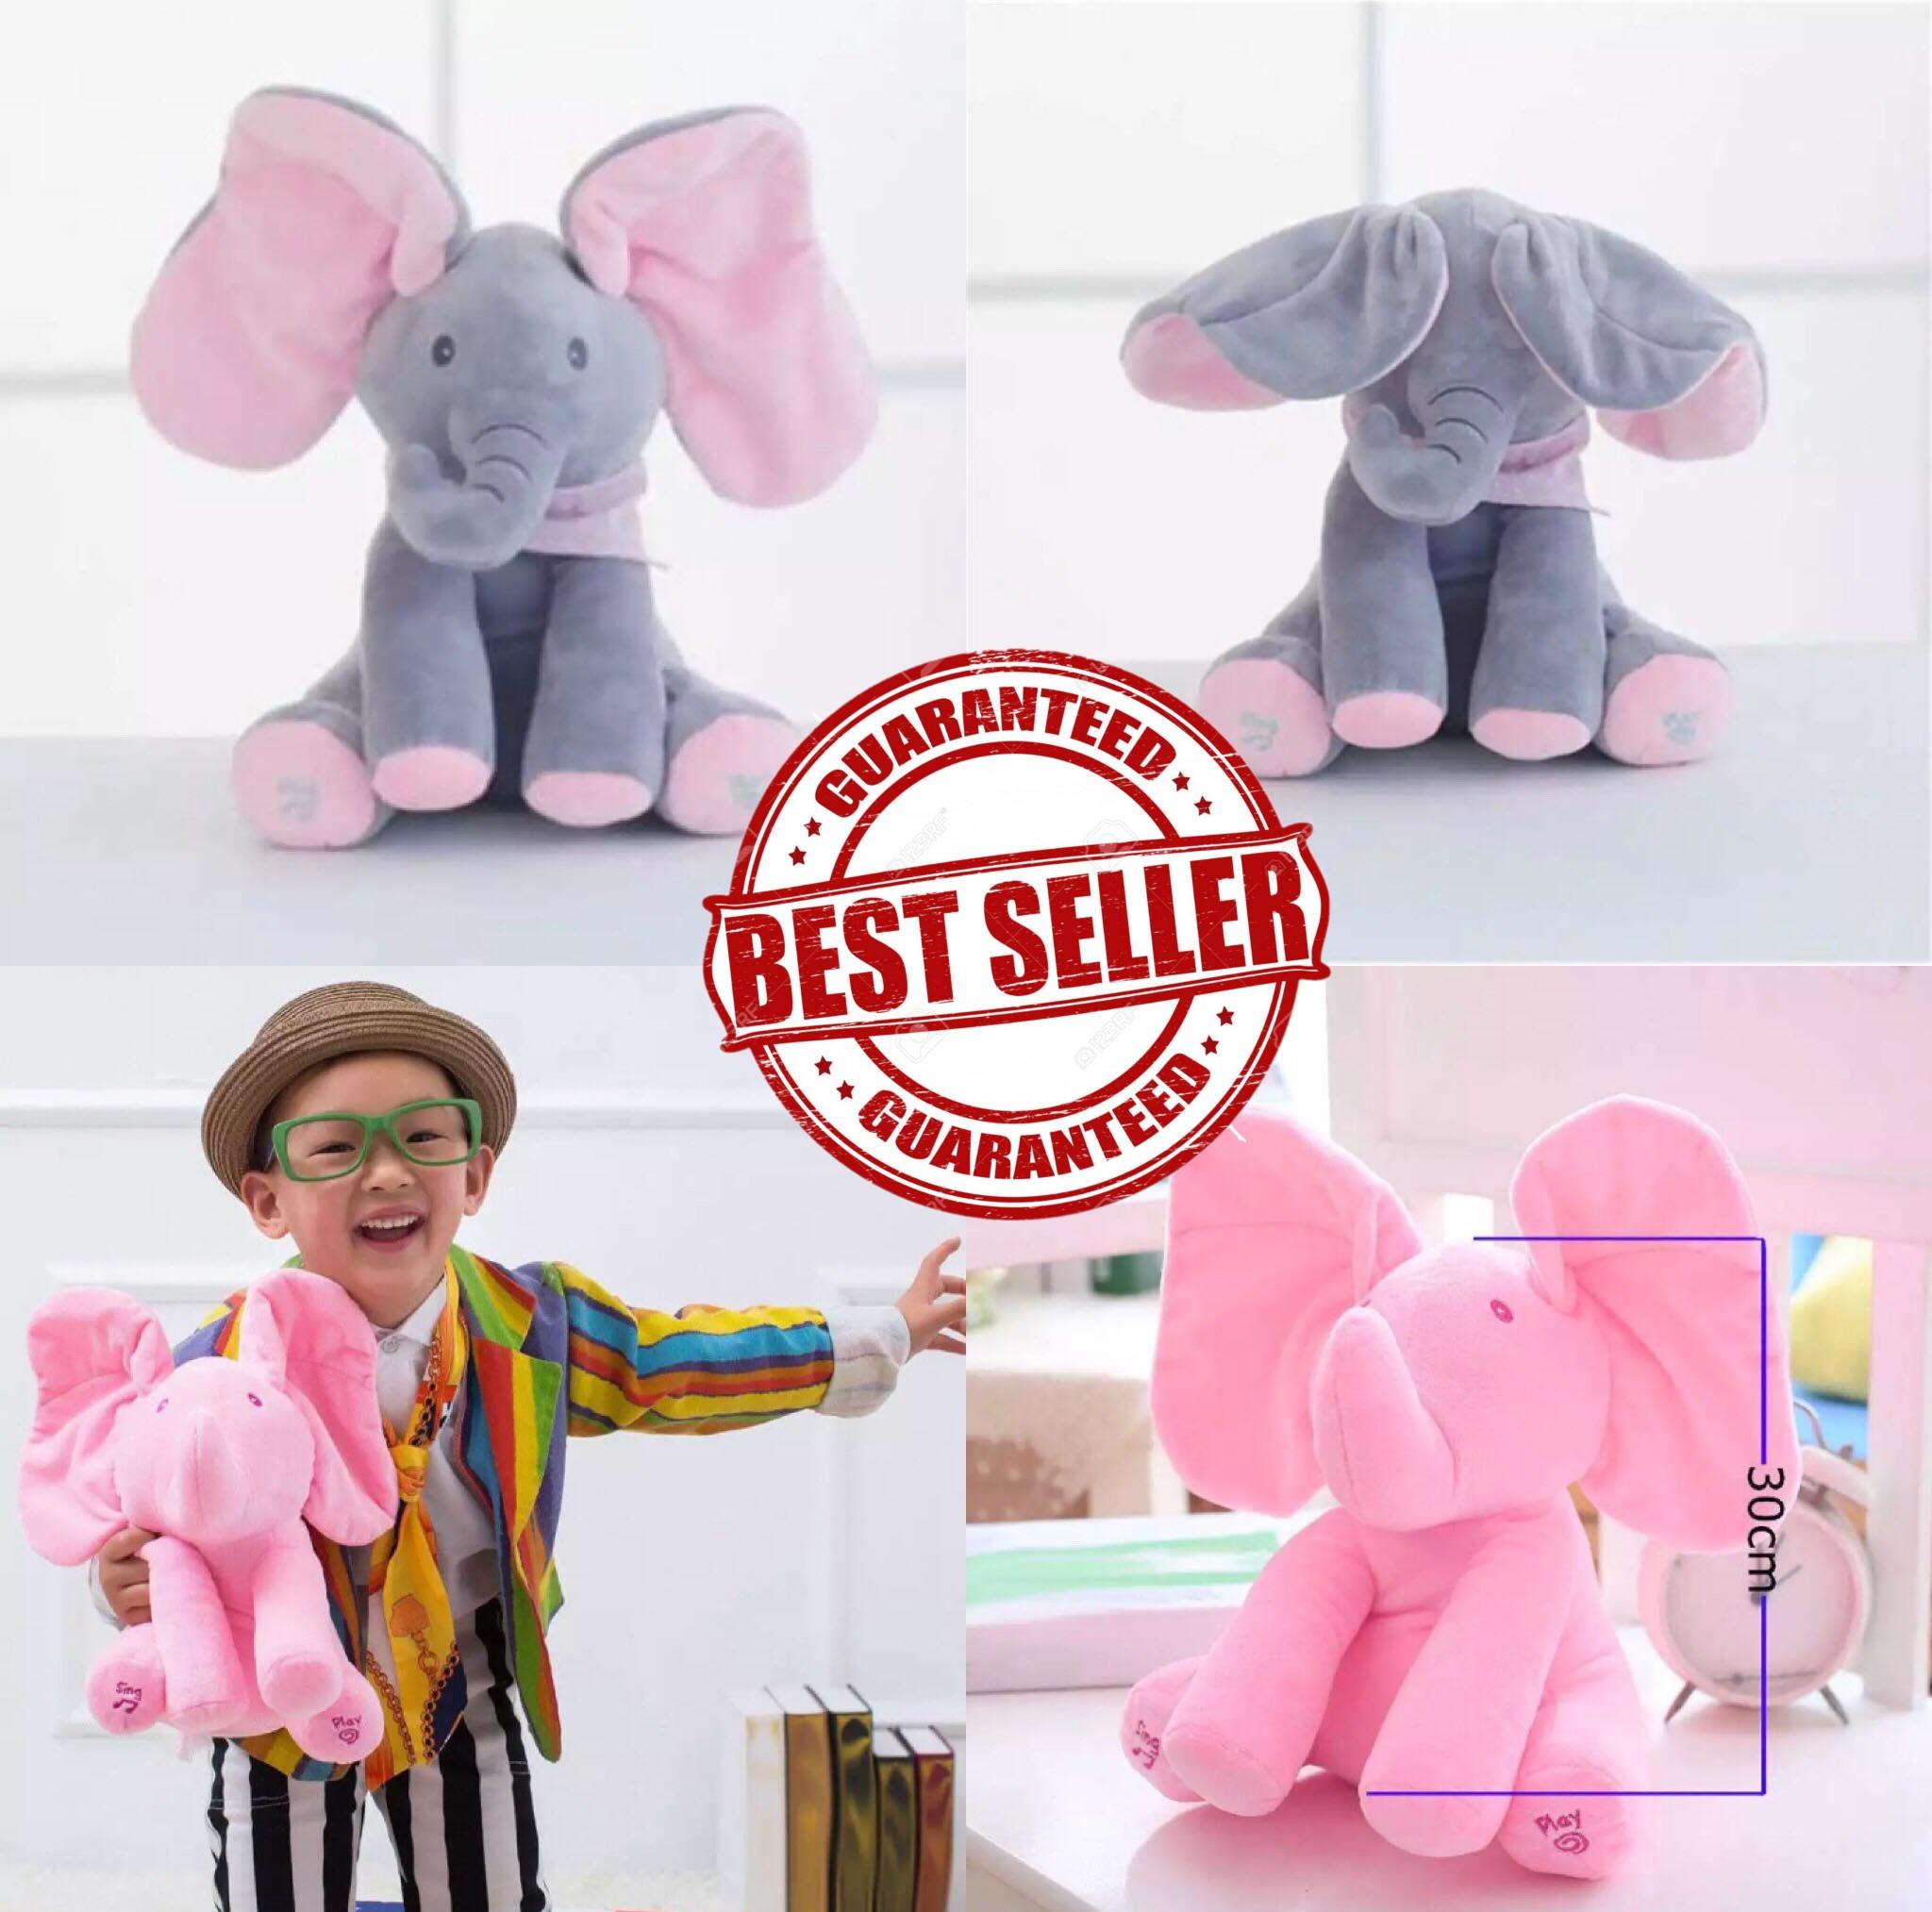 ตุ๊กตาช้าง น่ารัก หูดุ๊กดิ๊ก พูดและร้องเพลงได้ ผ้านุ่ม  สำหรับเด็ก ใช้ถ่านอัลคไลน์  Cute Plush Elephant Baby Toy that Talks and Sings and Moves its Ears